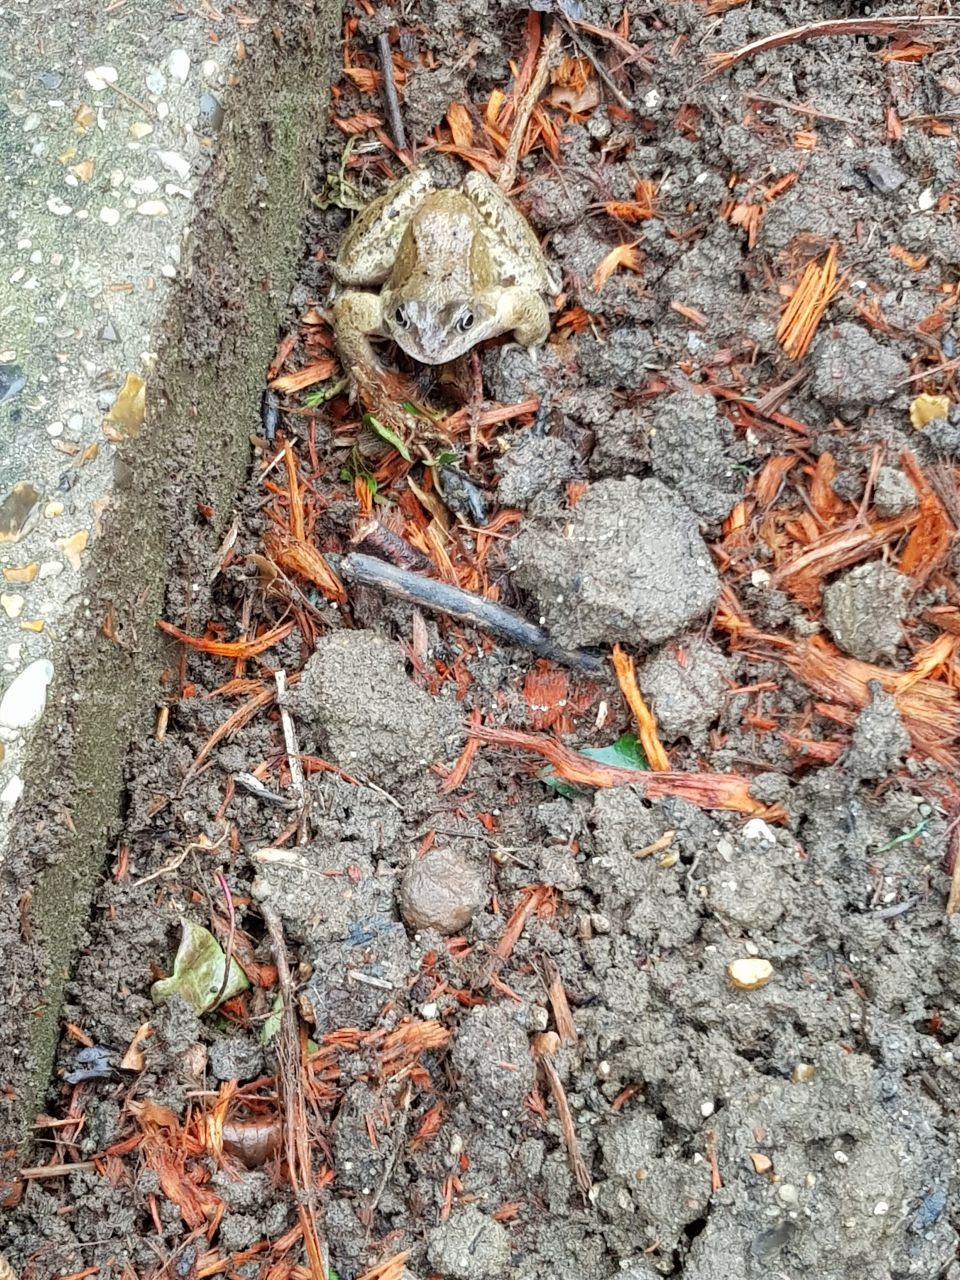 frog life